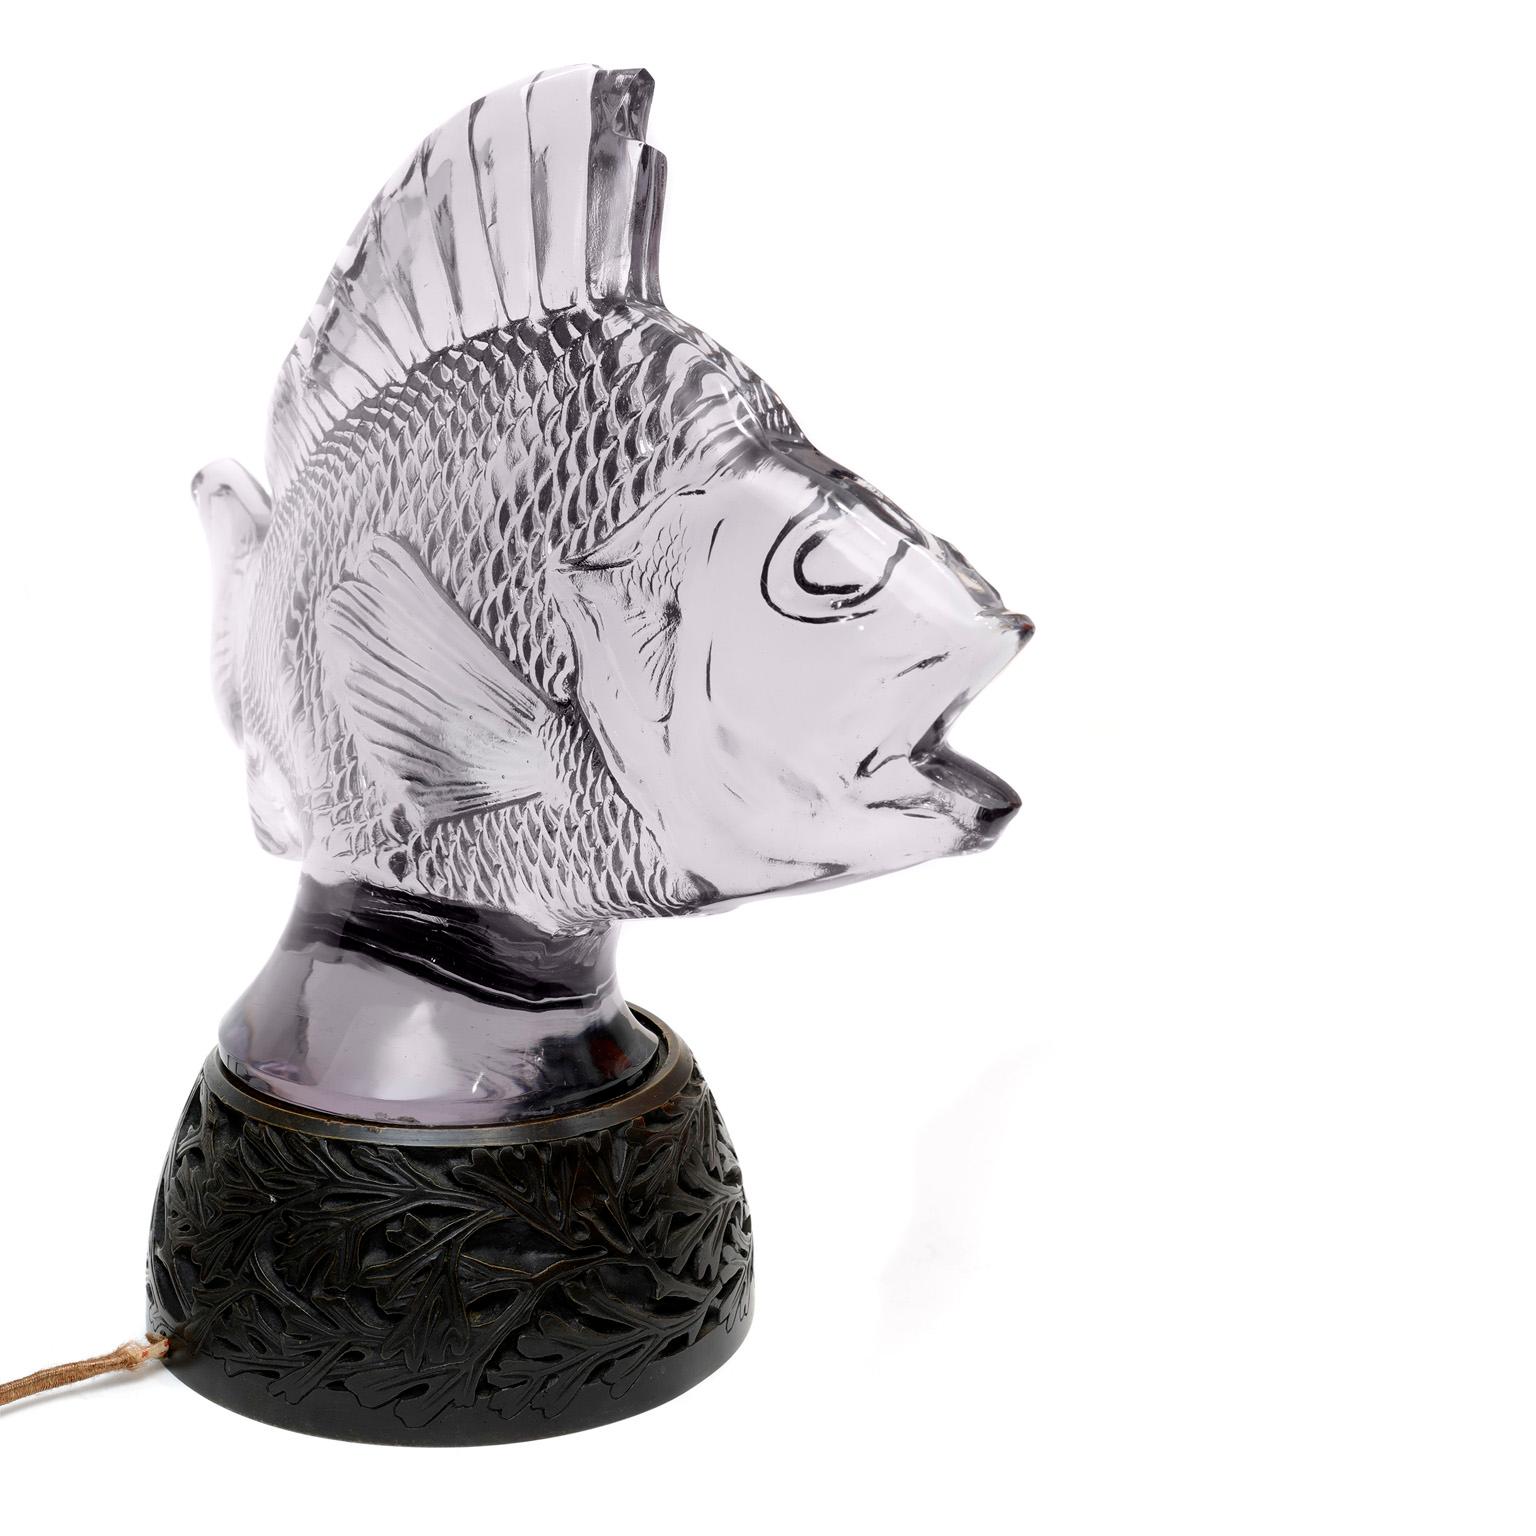 Authentique lampe-sculpture de poisson en verre Lalique, fabriquée en France.  Mettez en valeur une maison en bord de mer,  Faites plaisir à un amateur de pêche, ou offrez à votre Poisson préféré quelque chose d'exquis.  La sculpture de poisson en